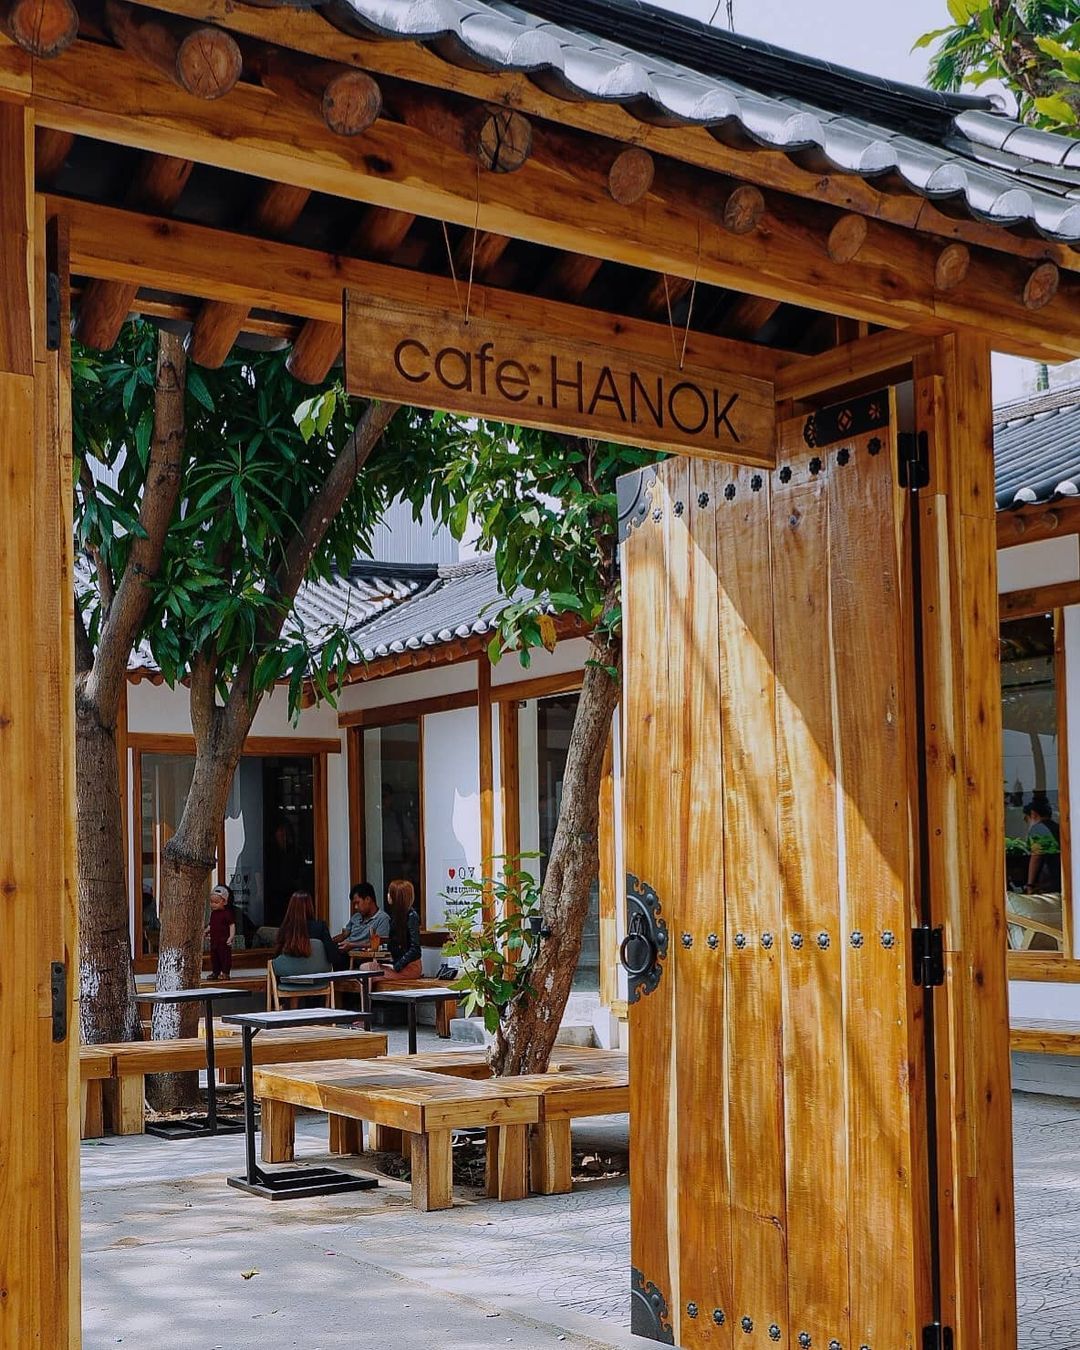 Hanok Cafe - Tiệm cà phê cổ mang đậm phong cách truyền thống Hàn Quốc 2